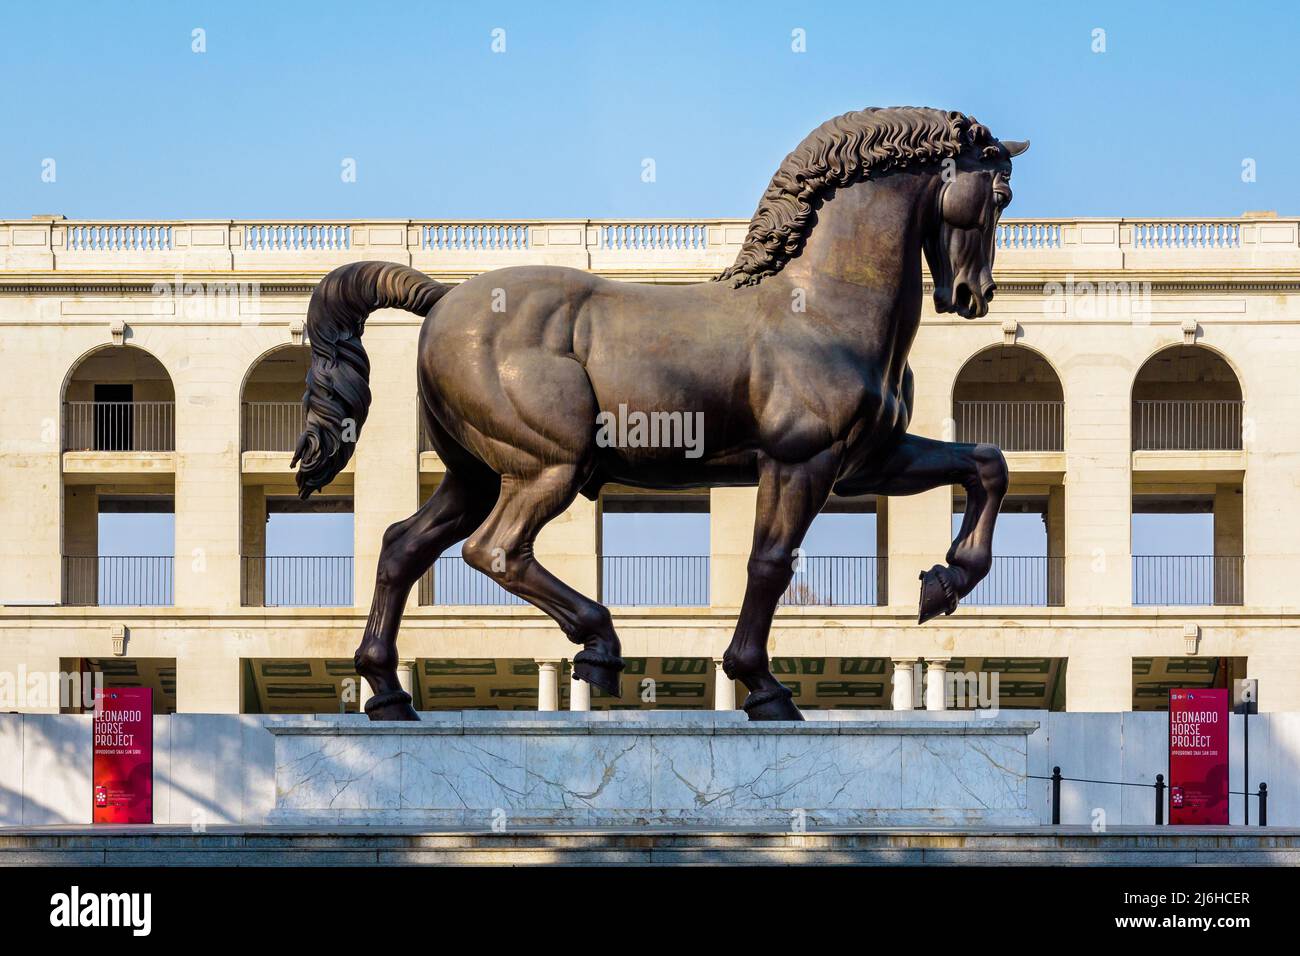 Le cheval de Léonard de Vinci (Cavallo di Leonardo) est une statue moderne en bronze, exposée à Milan, en Italie. Banque D'Images